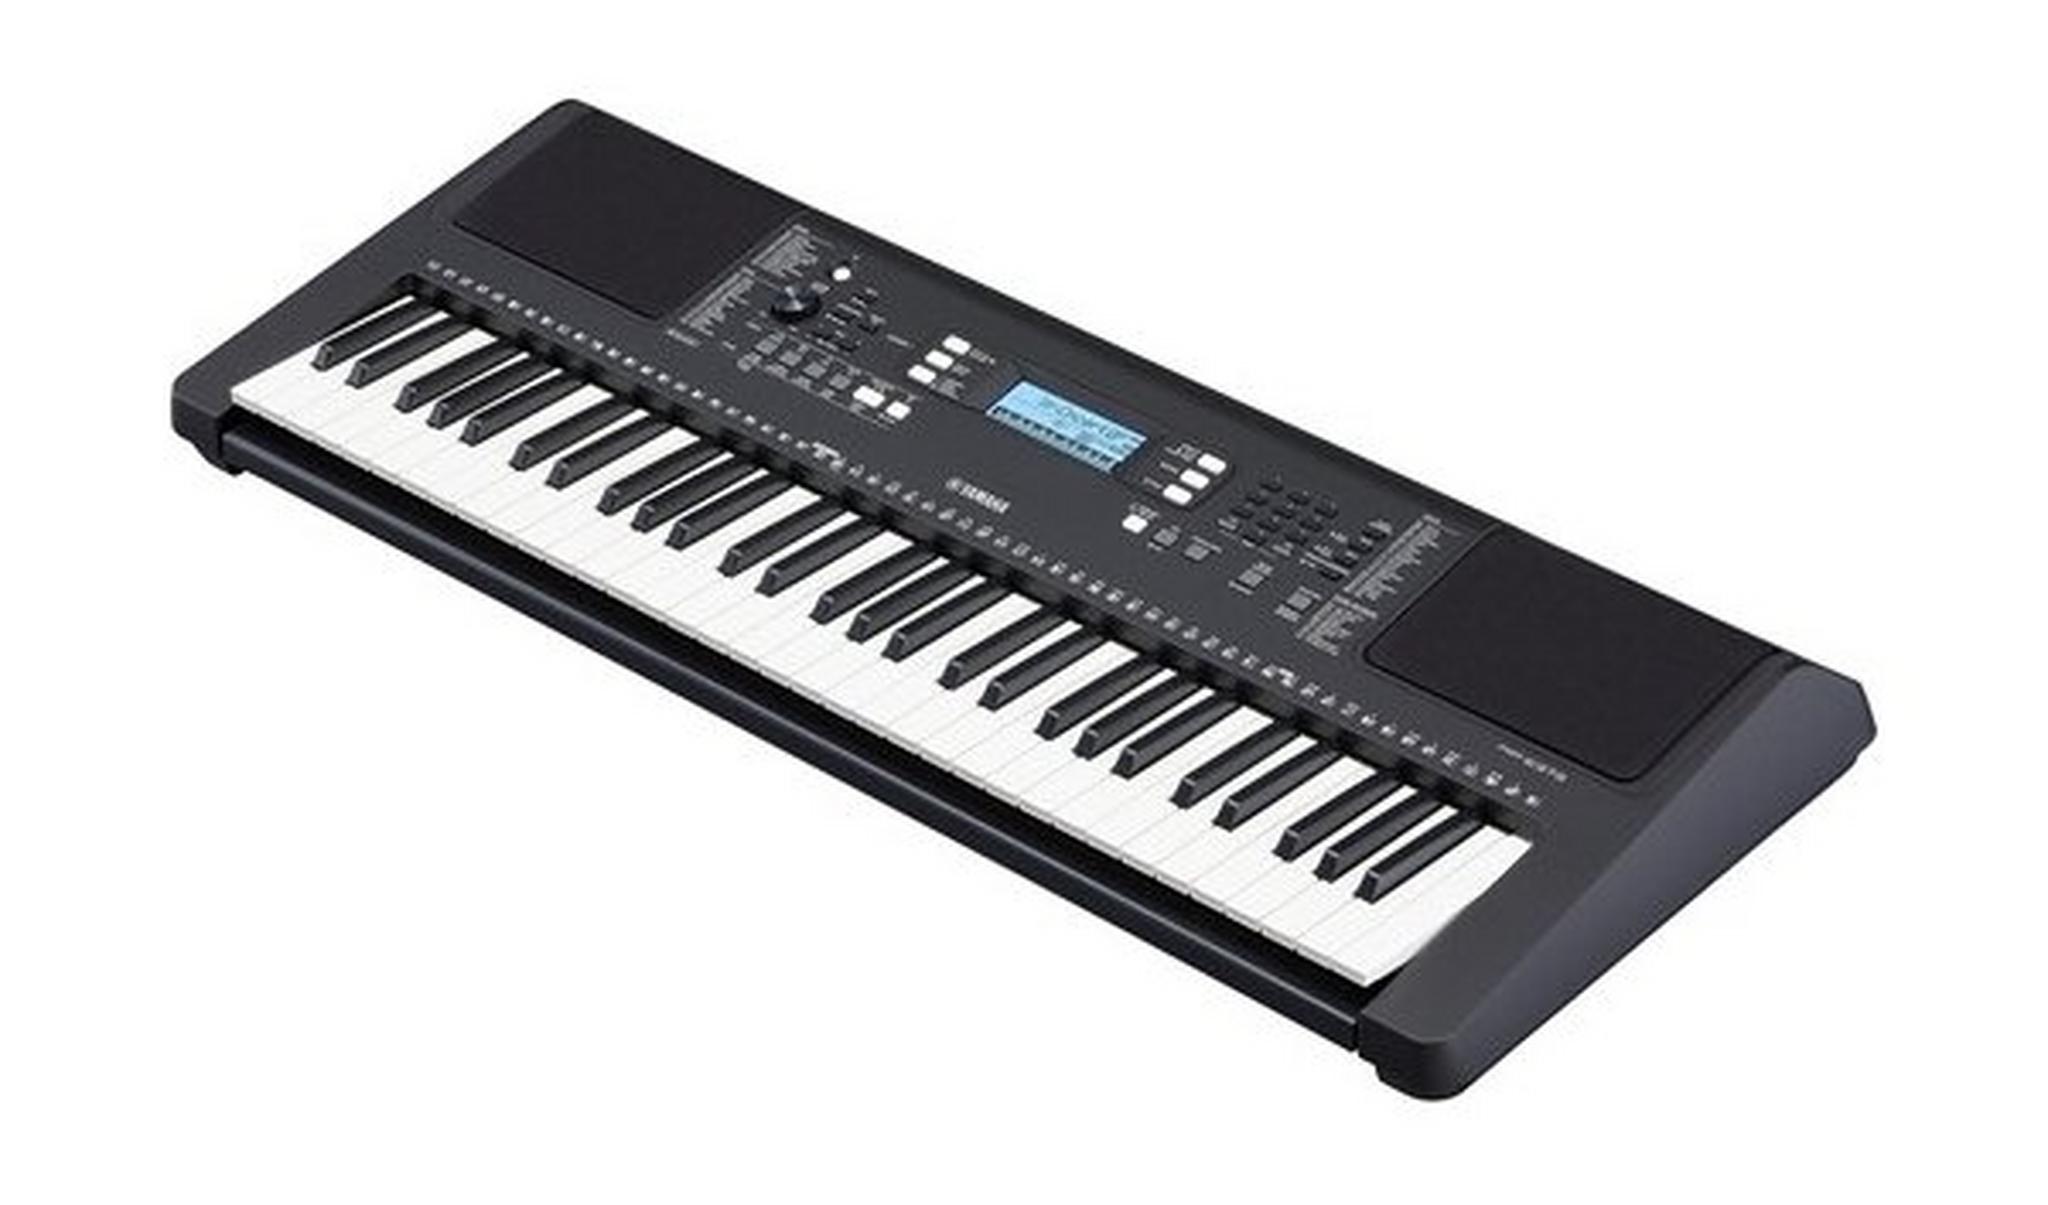 لوحة مفاتيح موسيقية ياماها محمولة 61 مفتاحًا حساس للمس - (PSR-E373)